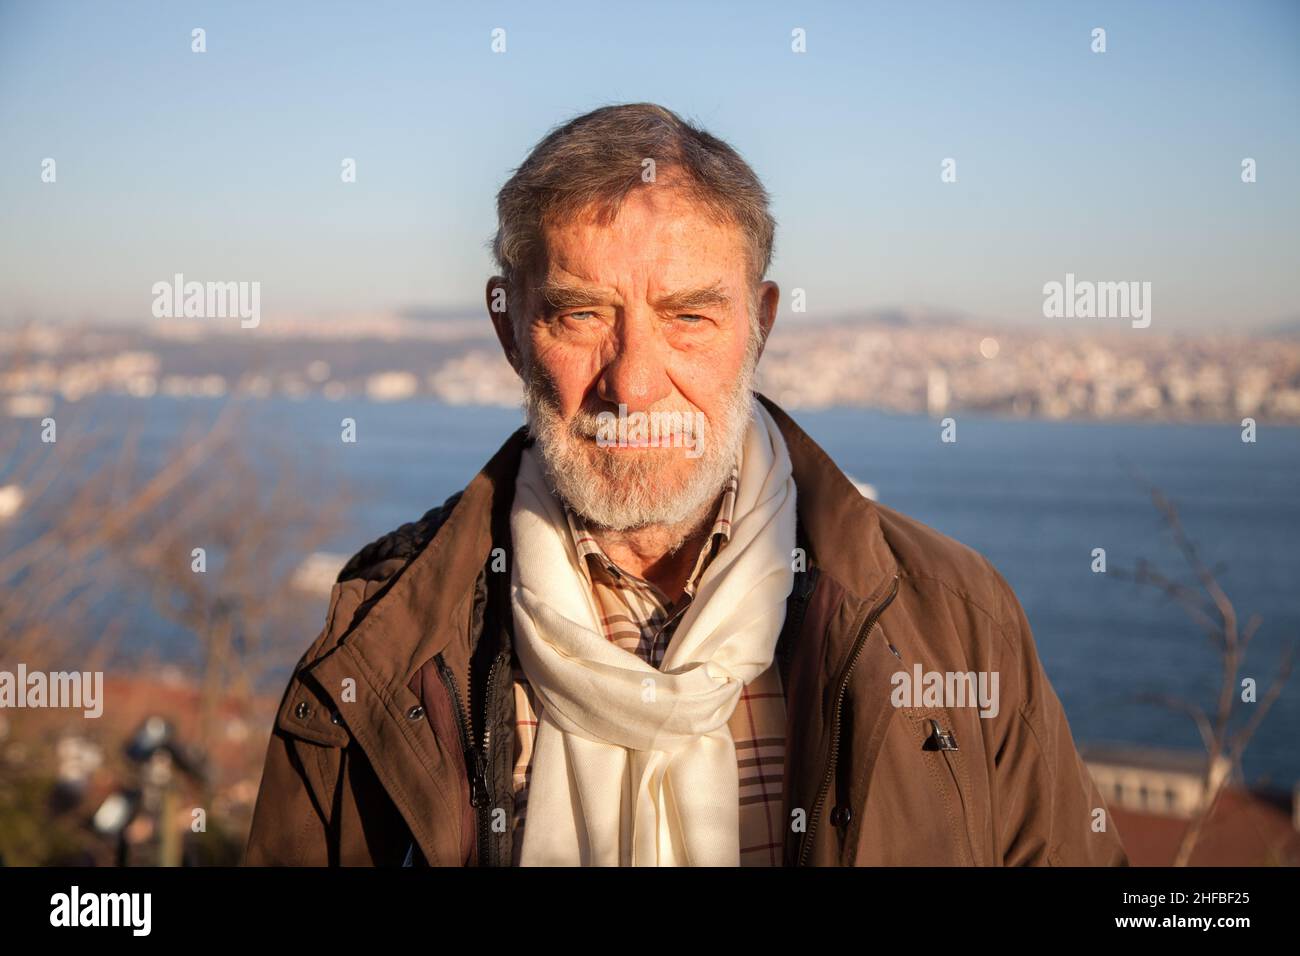 İstanbul/Turkey - 2/17/2014:Ahmet Mekin is a Turkish actor. Stock Photo